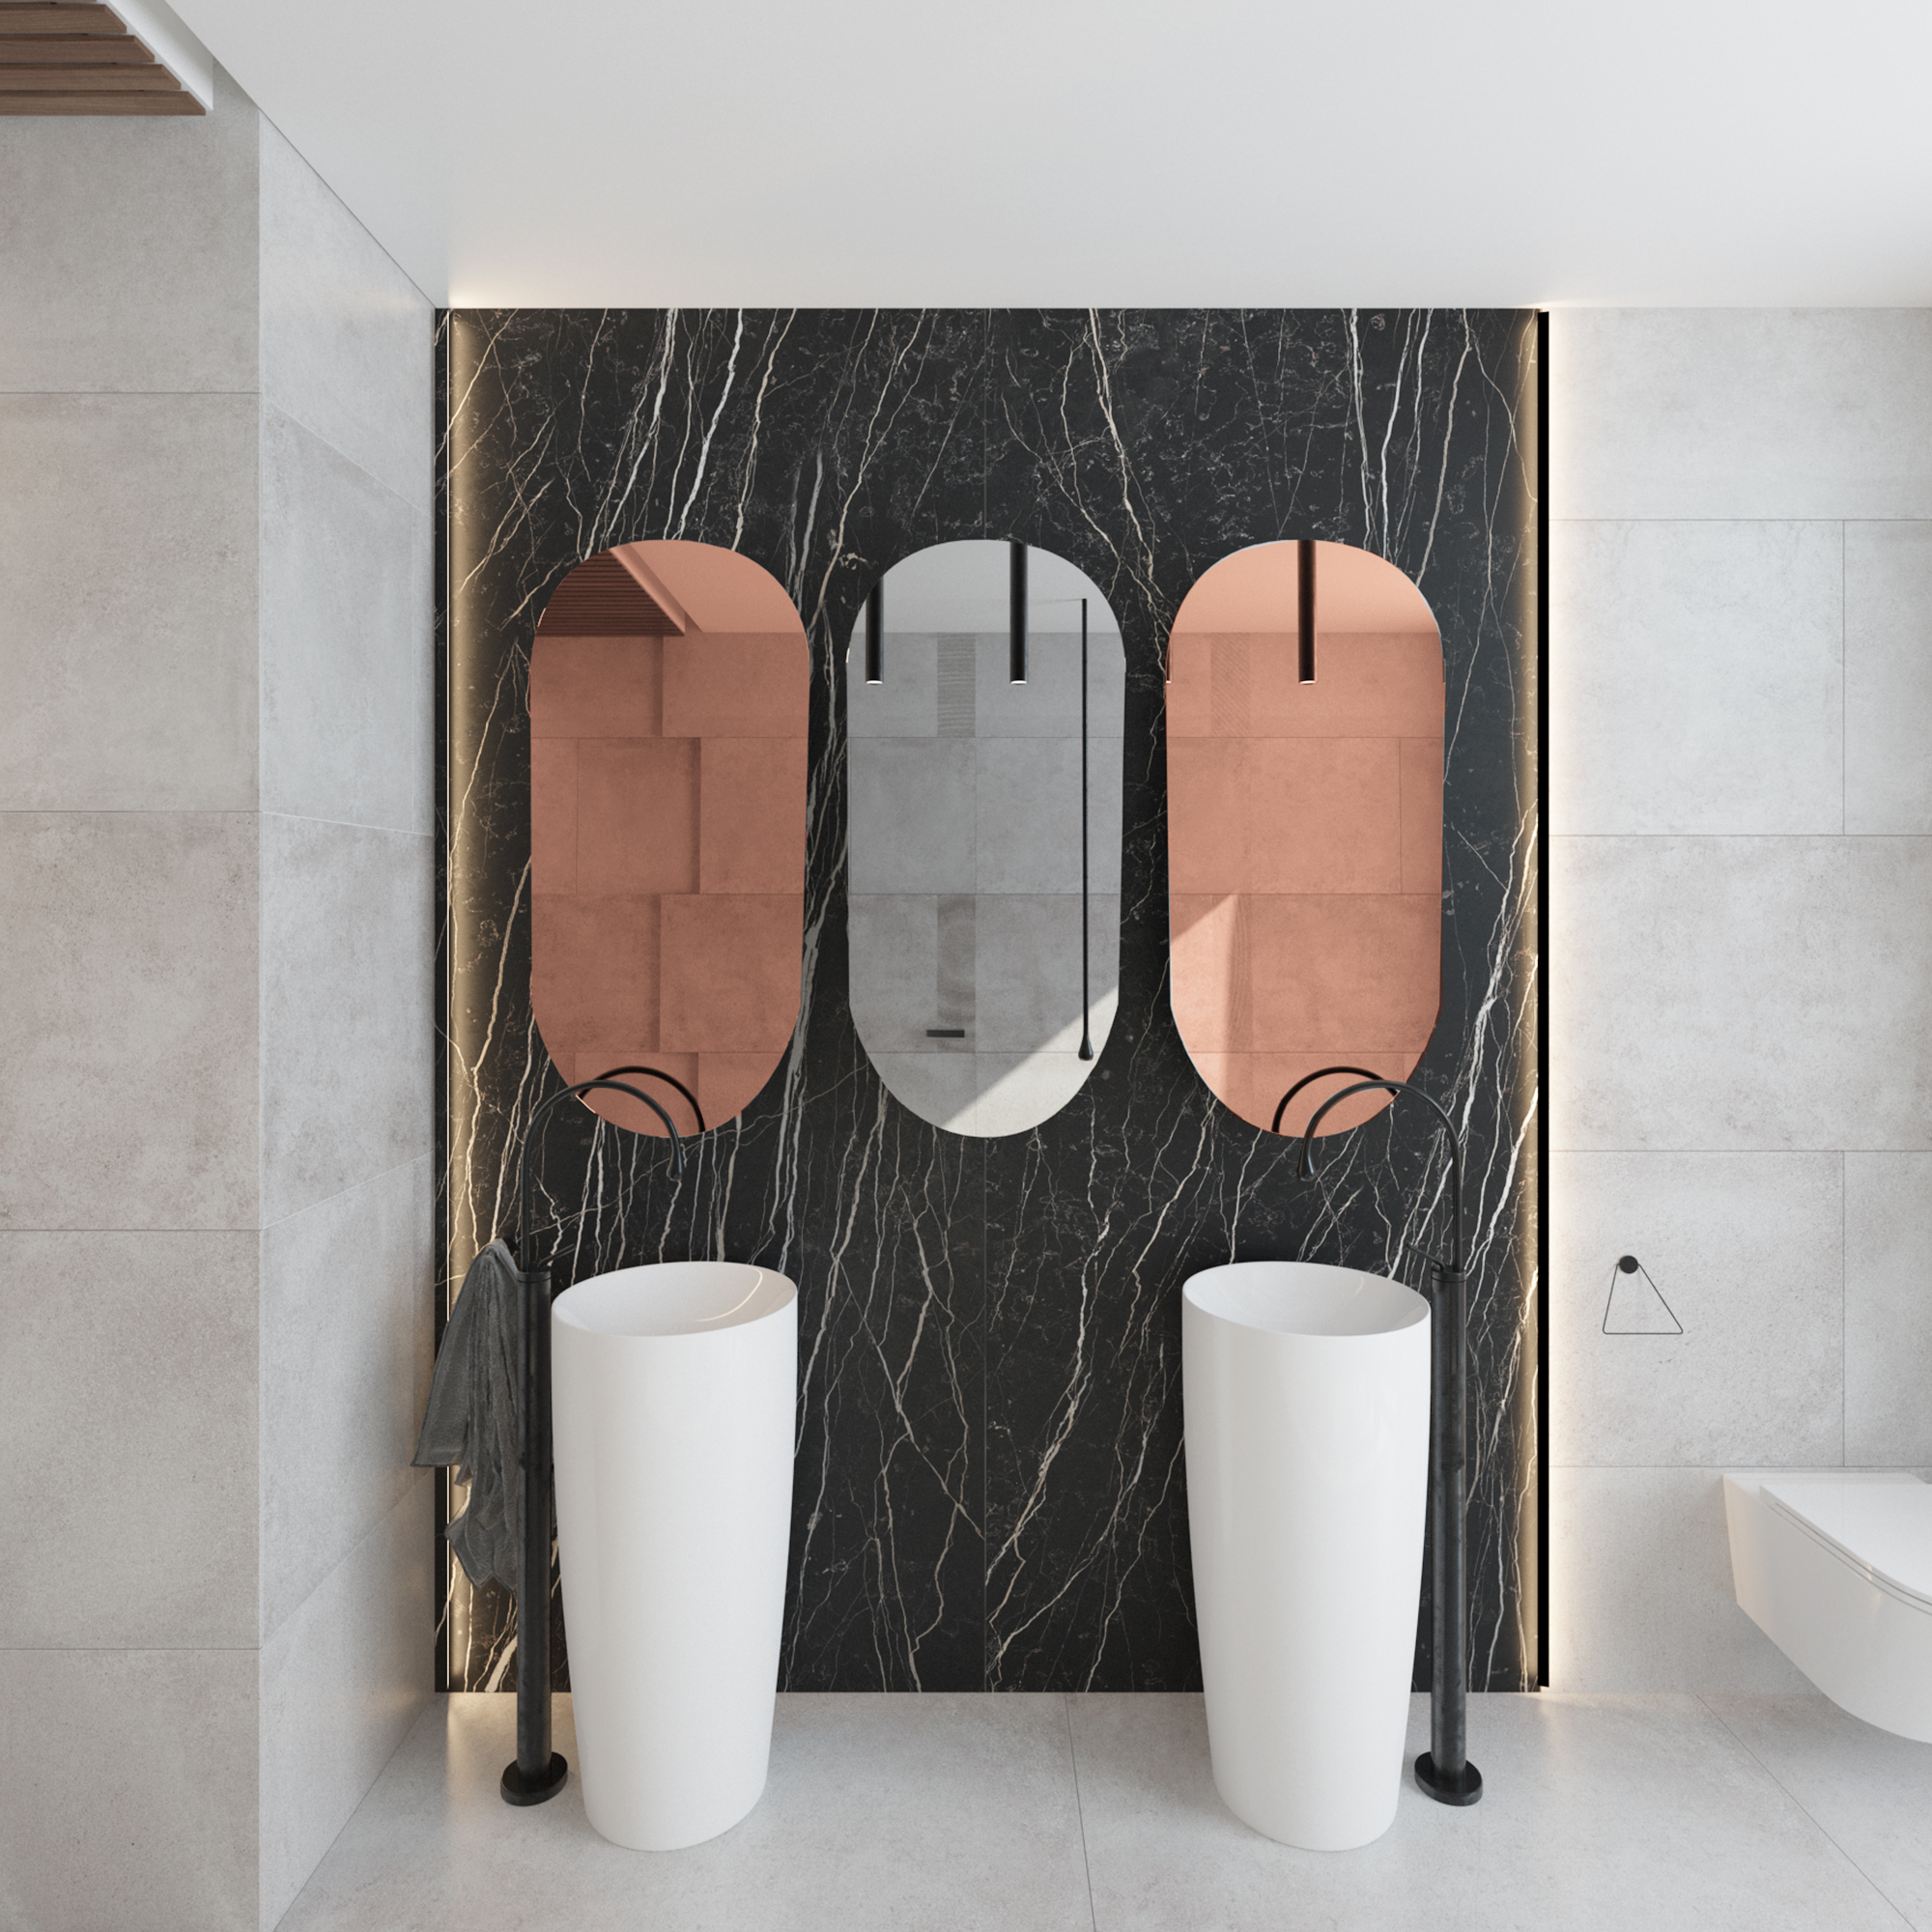 Specchio da bagno ovale - Tutti i produttori del design e dell